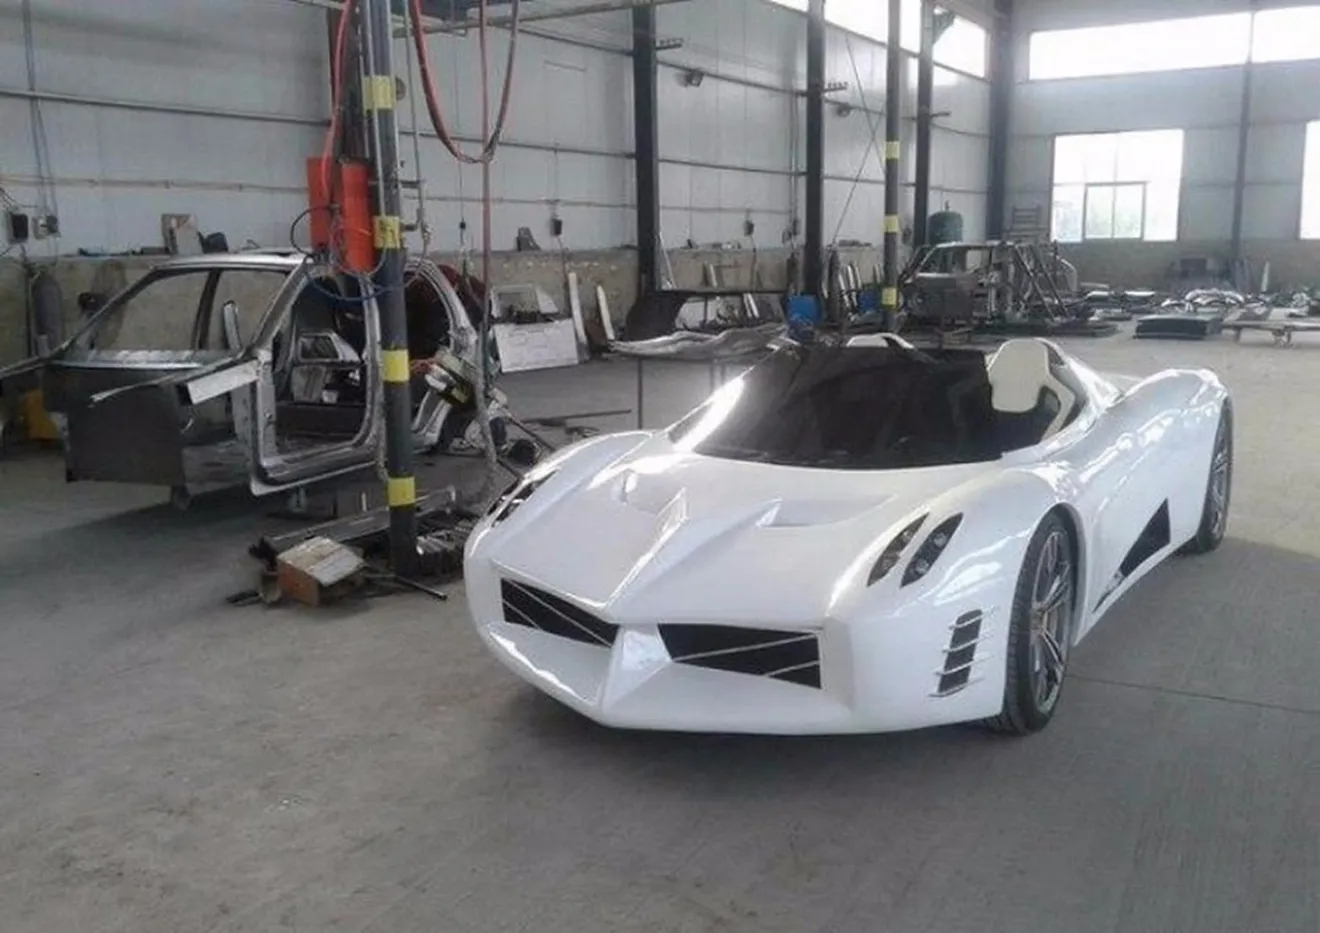 Esta copia china del Pagani Huayra es un coche eléctrico… ¡Y está en producción!